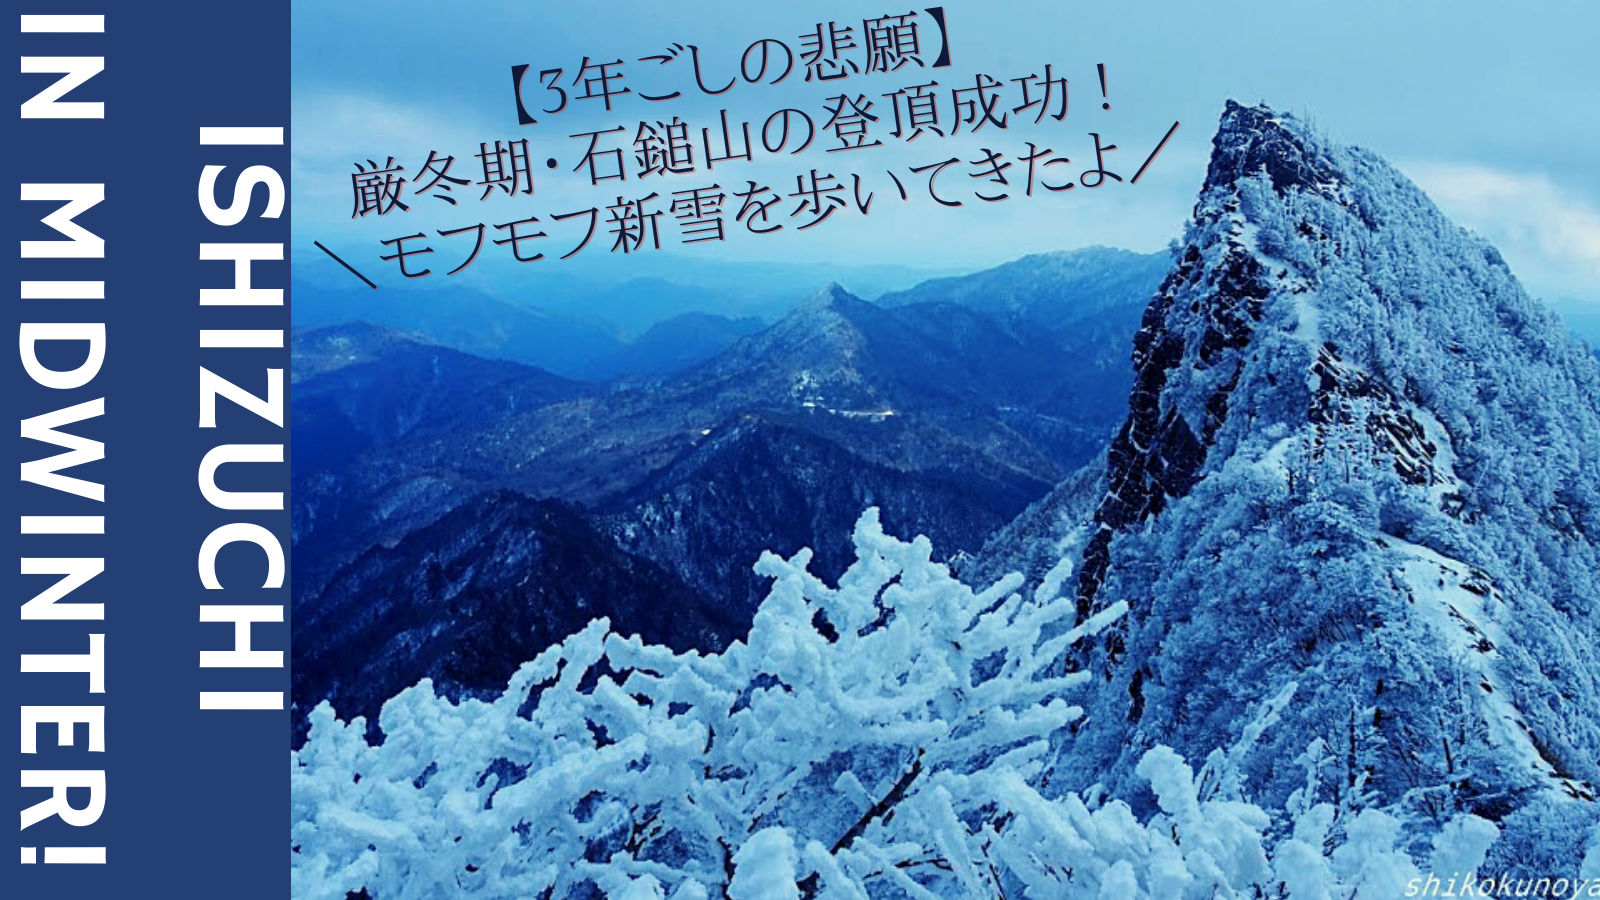 3年ごしの悲願 厳冬期 石鎚山の登頂成功 モフモフ新雪を歩いてきたよ 四国の山 Com